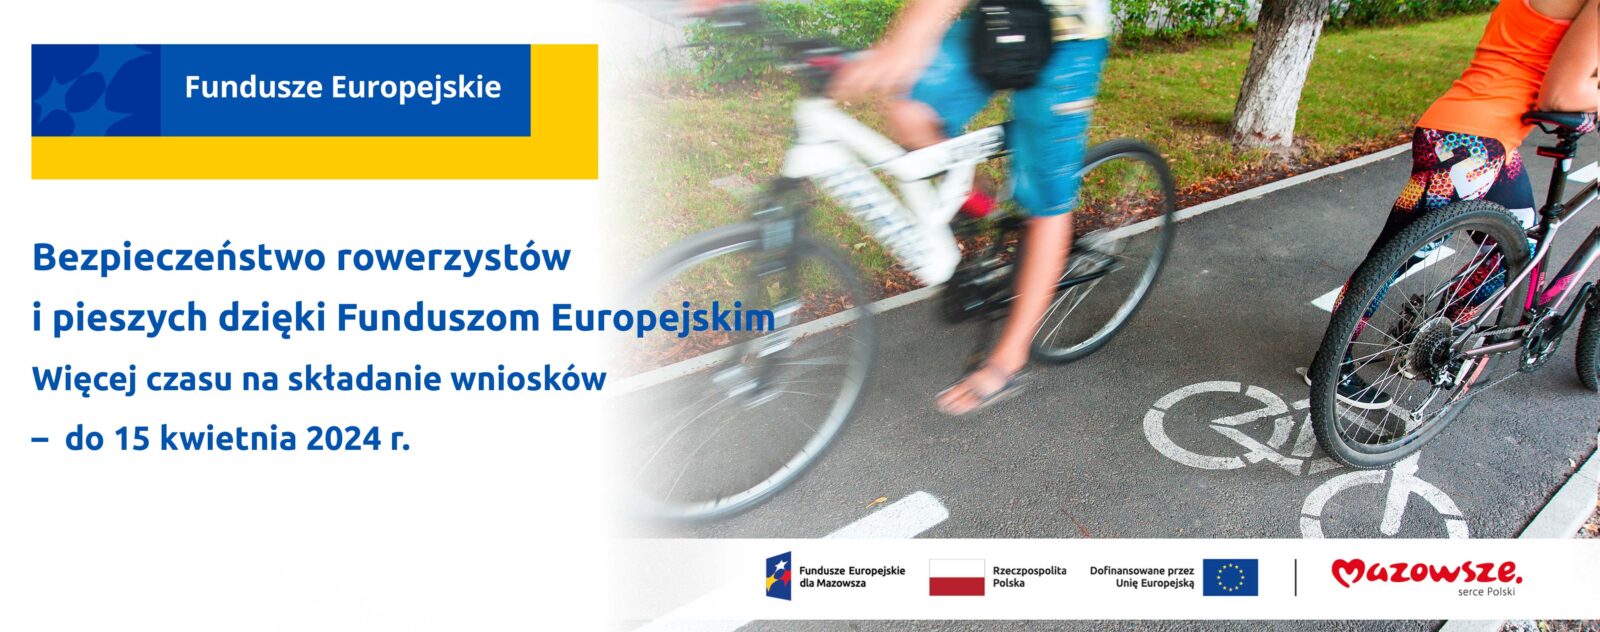 Bezpieczeństwo rowerzystów i pieszych dzięki Funduszom Europejskim. Więcej czasu na składanie wniosków – do 15 kwietnia 2024 r. Z prawej strony grafiki widać rowerzystów jadących po ścieżce rowerowej.